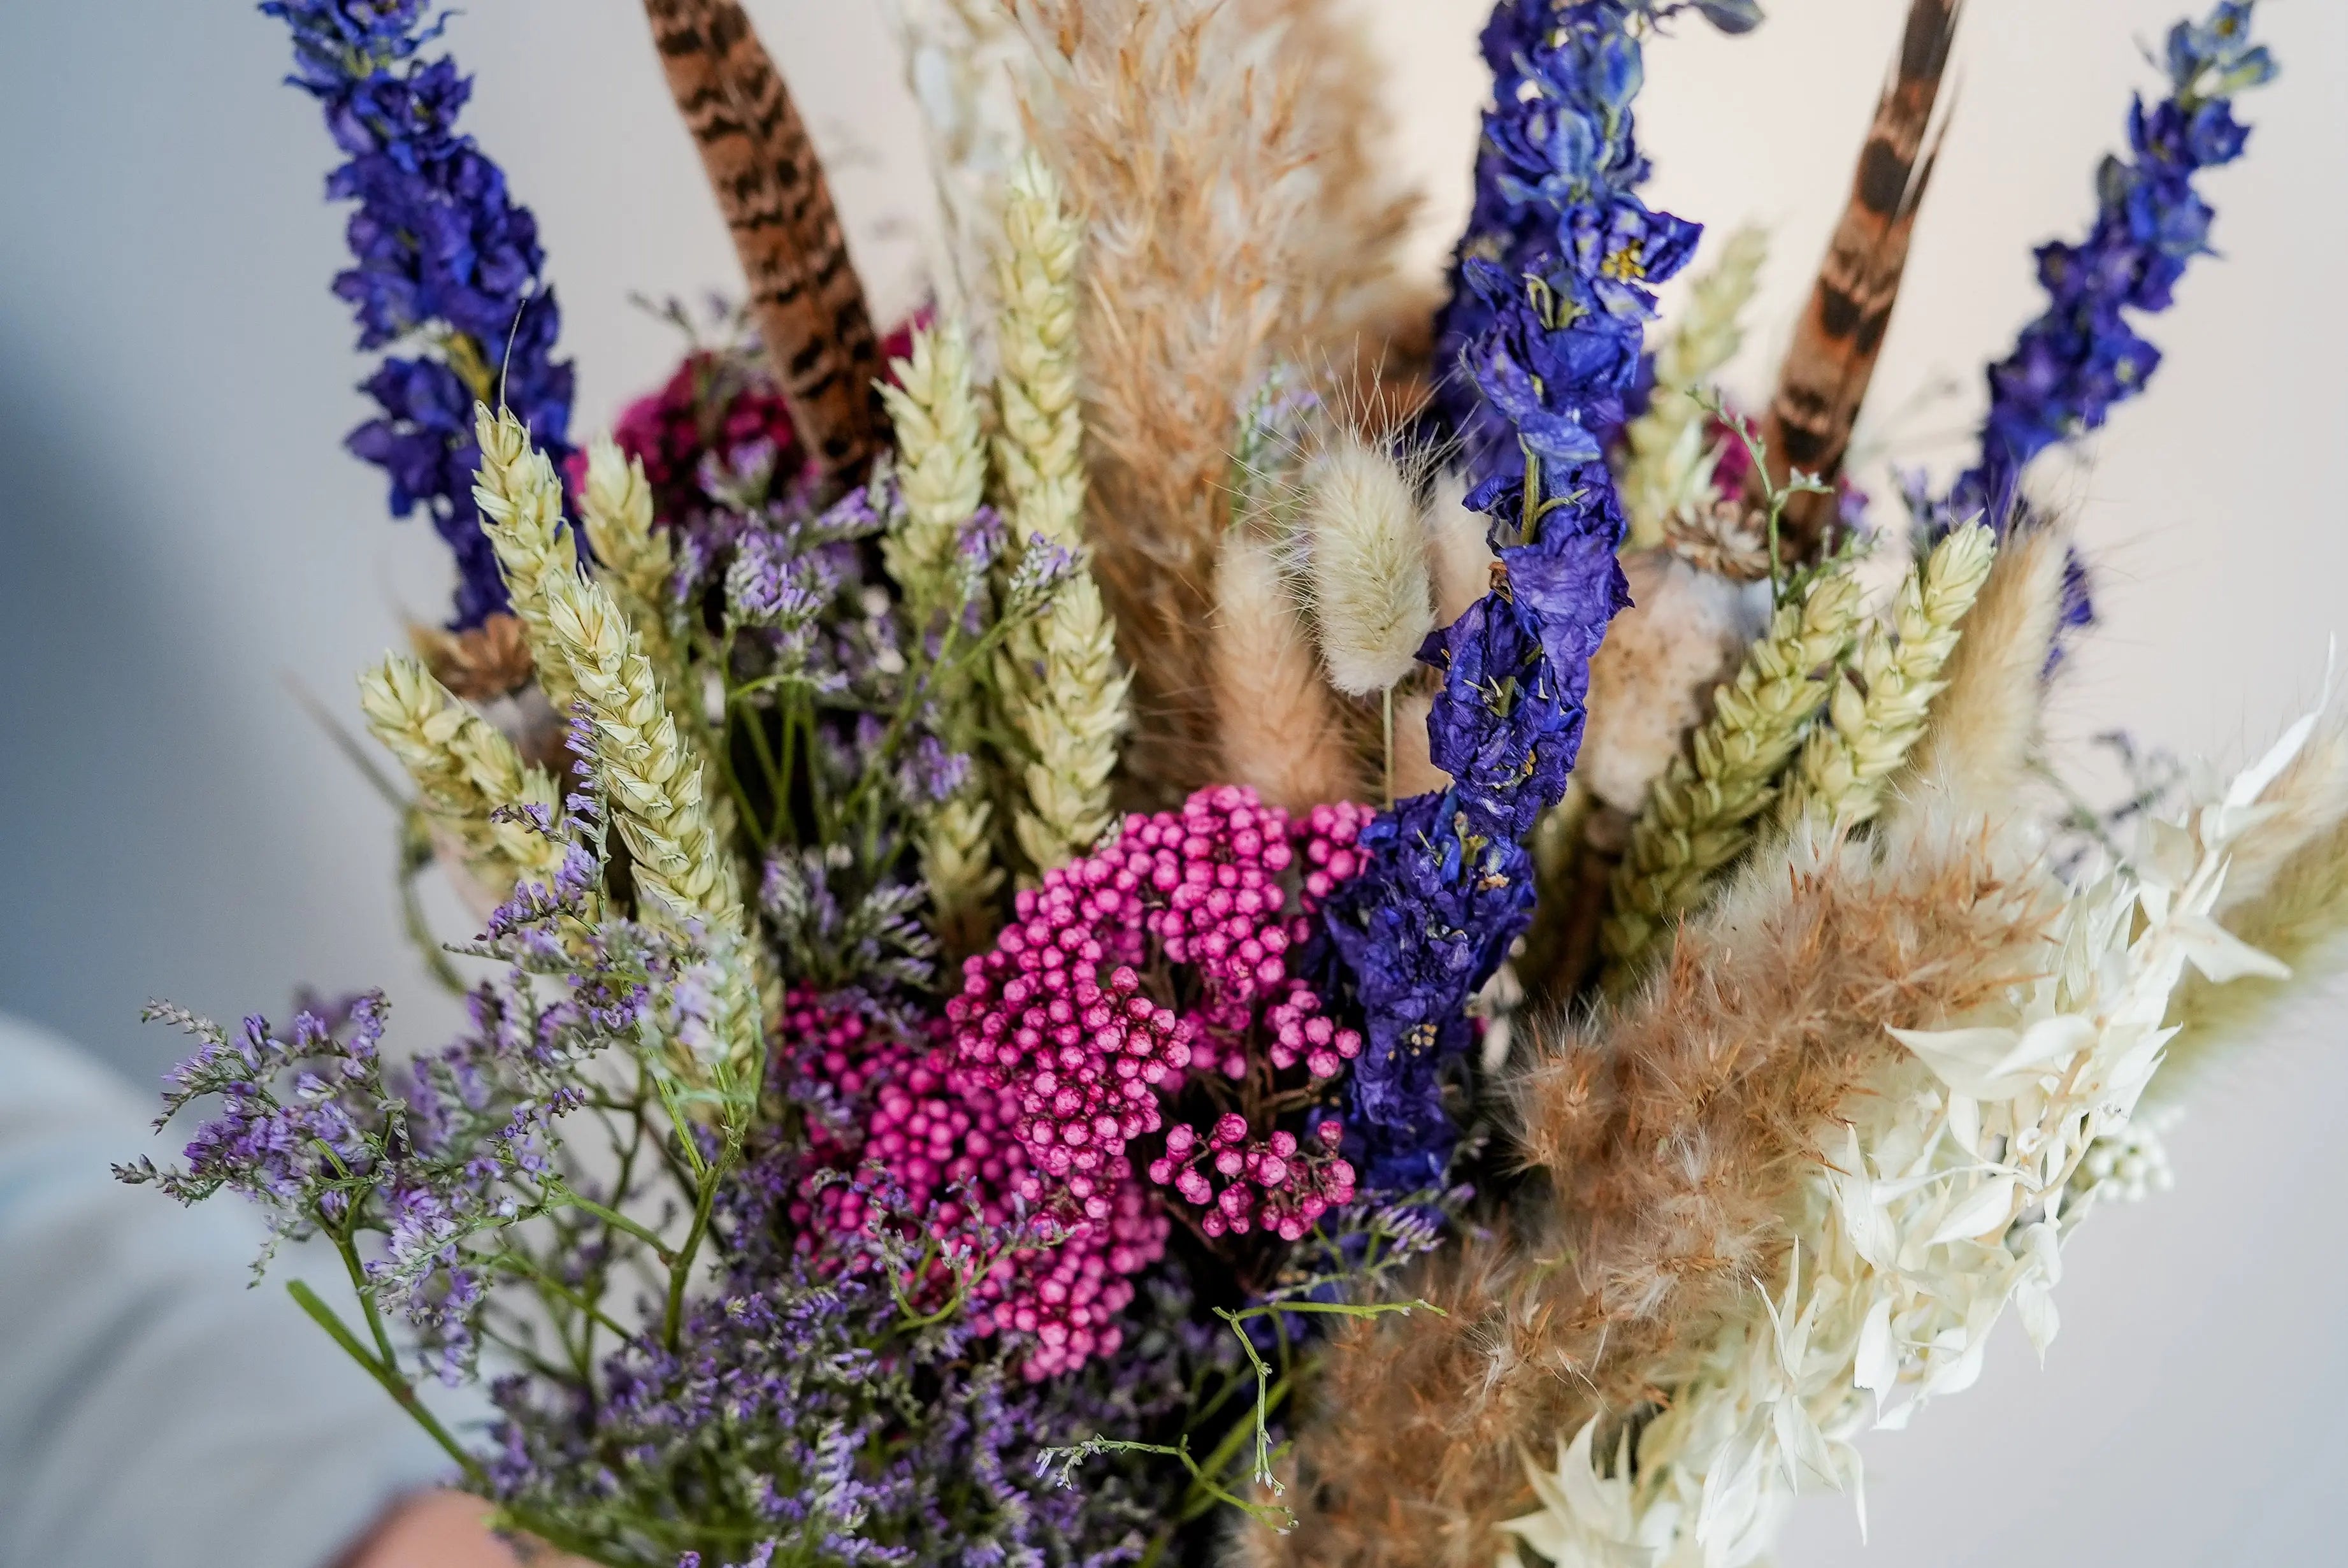 Trockenblumenstrauß NAIKE aus Hafer, Lavendel, Phalaris in verschiedenen Farben, Lagurus, Delphinium, Rice Flowers, Mohn und eine Feder